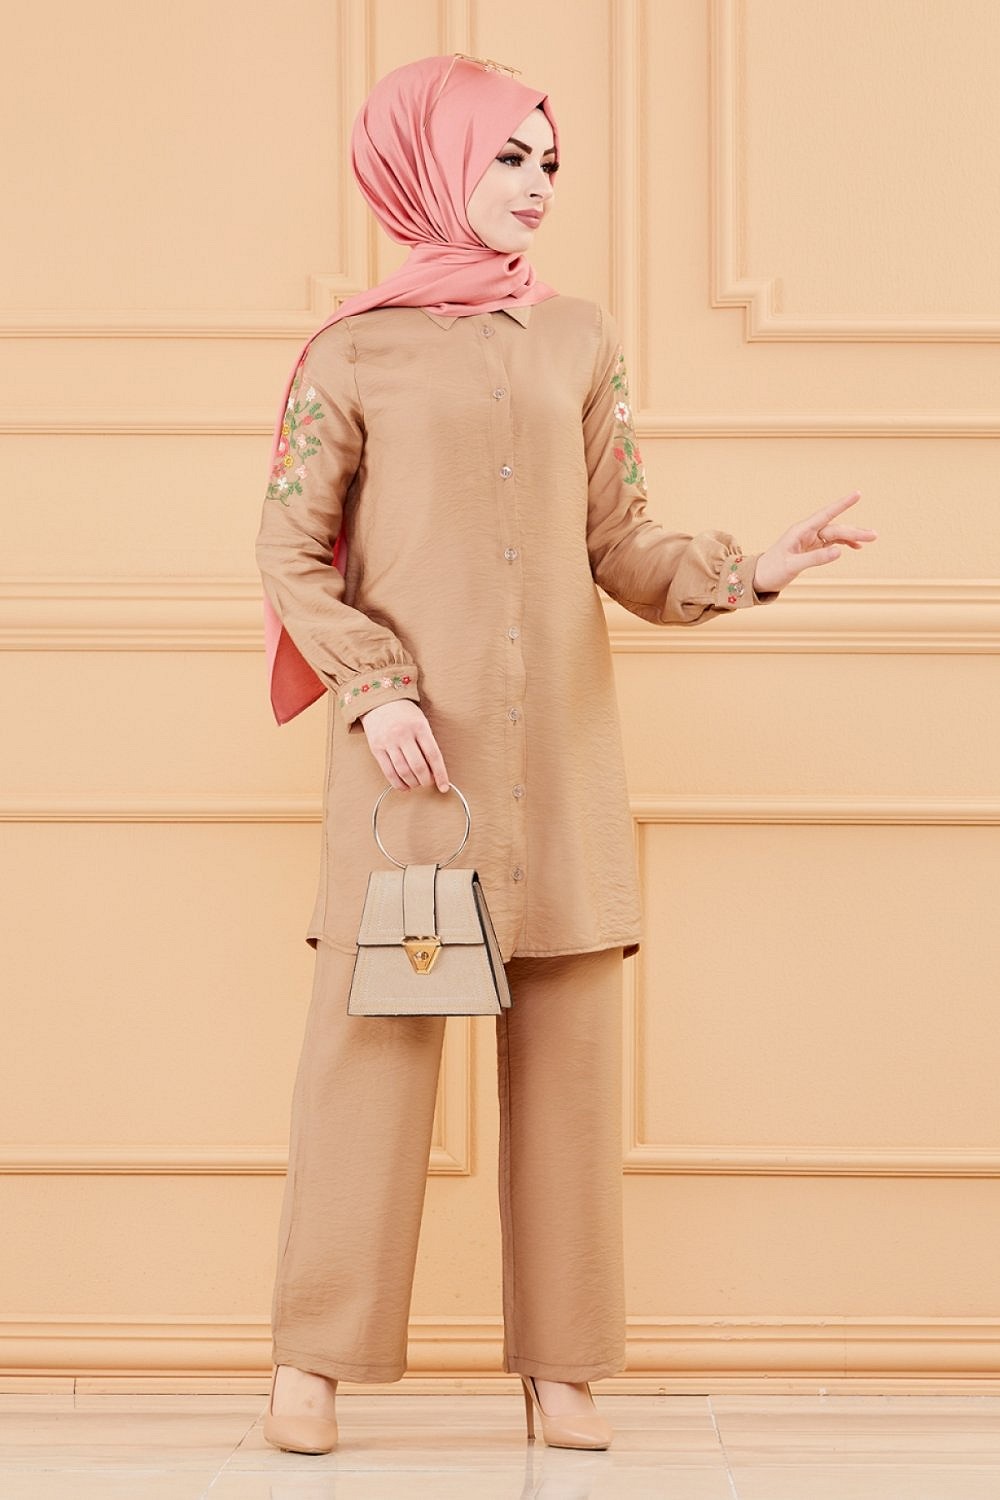 Ensemble style habillé pour femme (tunique/chemise avec broderie et  pantalon) - Couleur beige